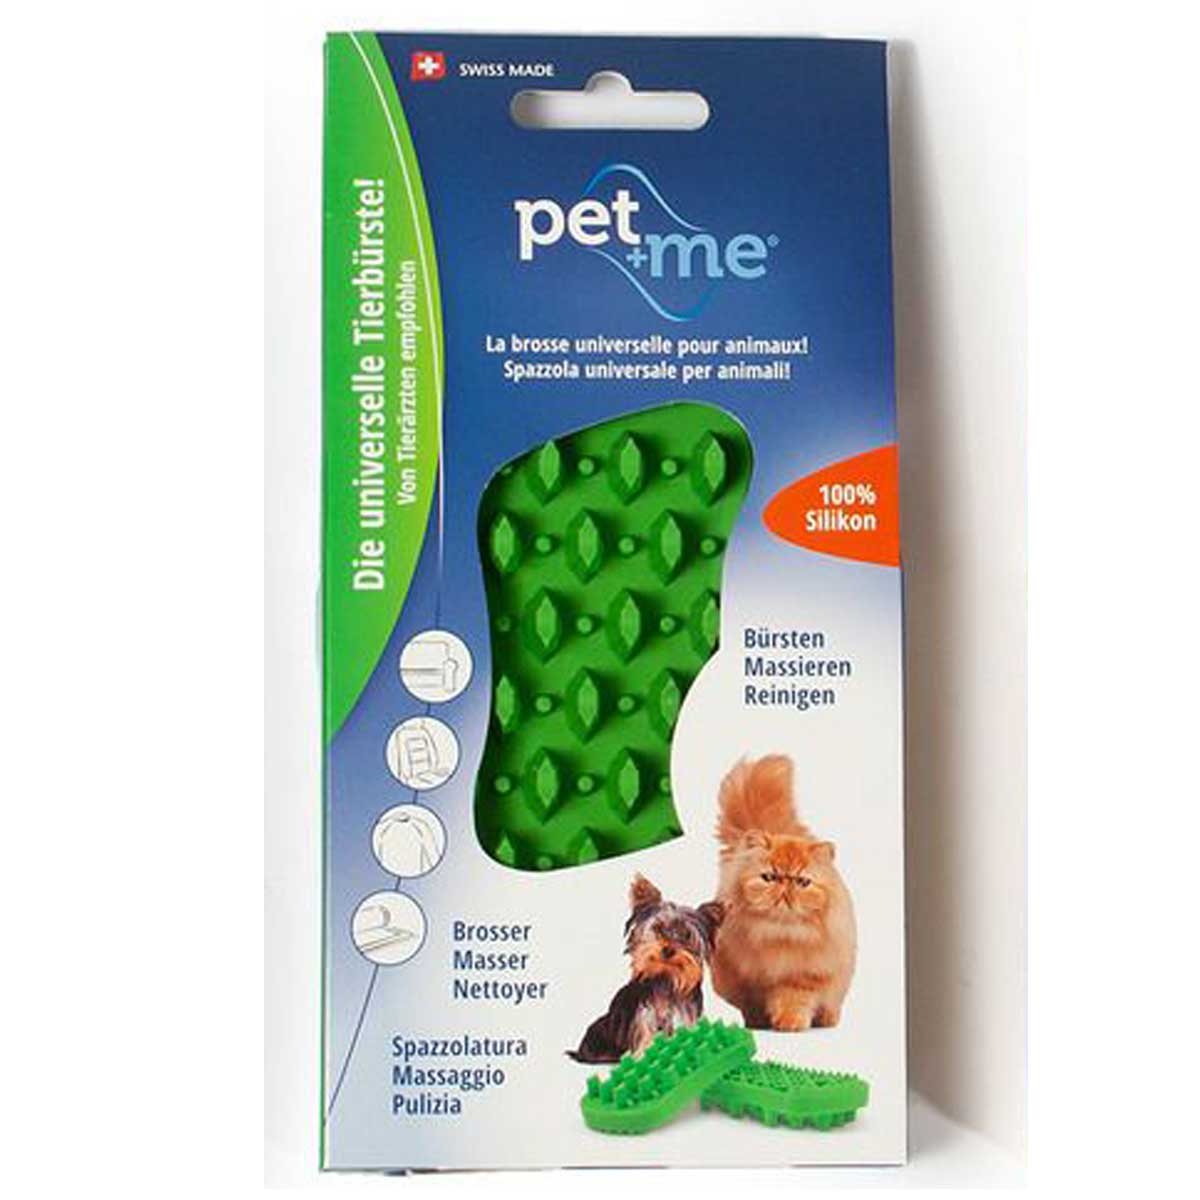 Silicone animal brush pet+me green